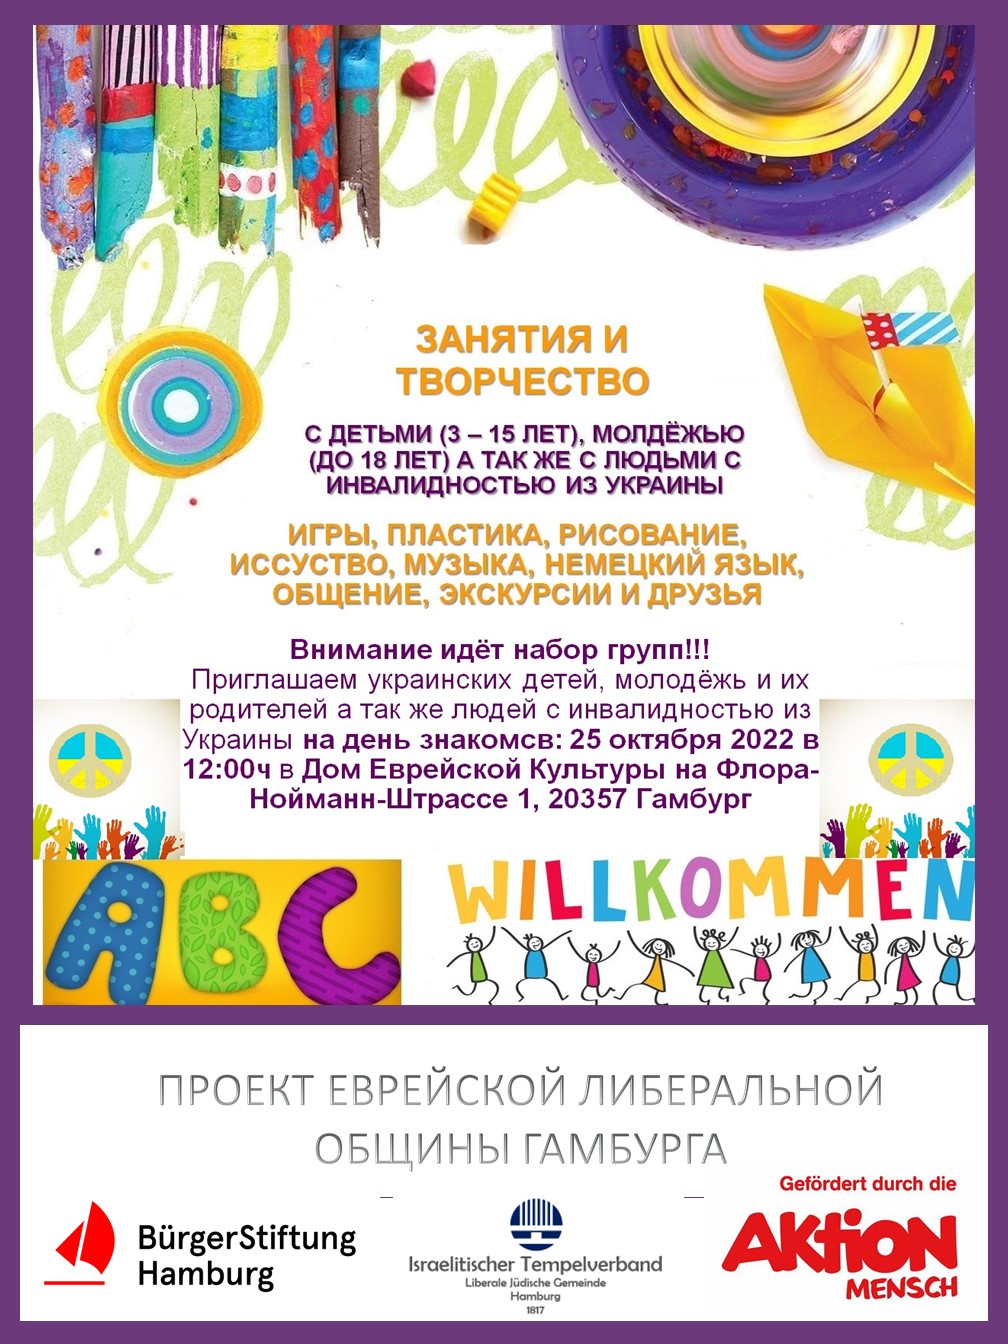 ein interaktives Kreativ-Angebot für Kinder, Jugendliche und Menschen mit Behinderung (Flüchtlinge aus der Ukraine)